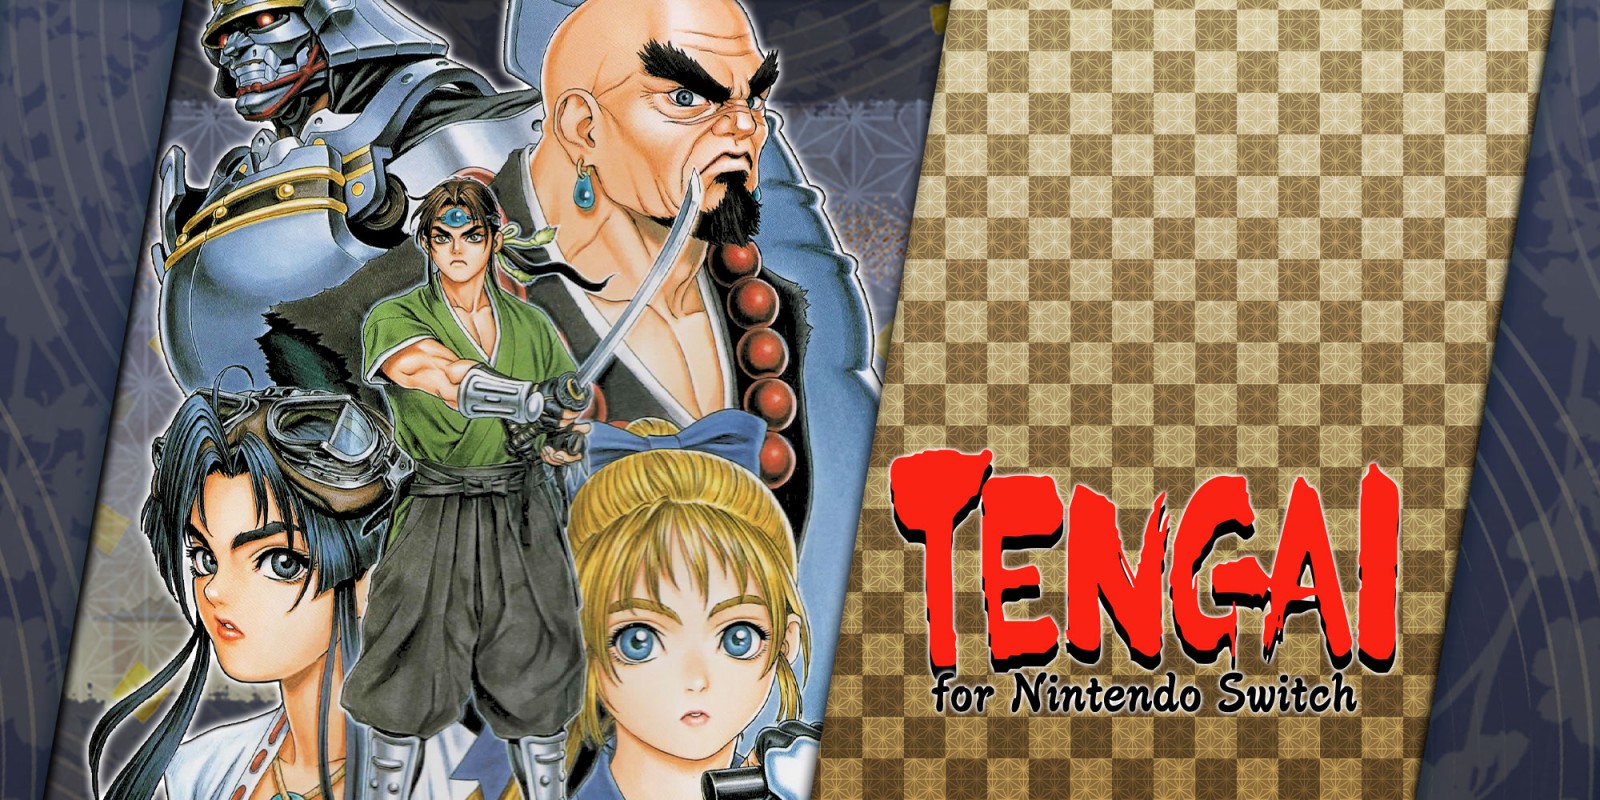 TENGAI for Nintendo Switch